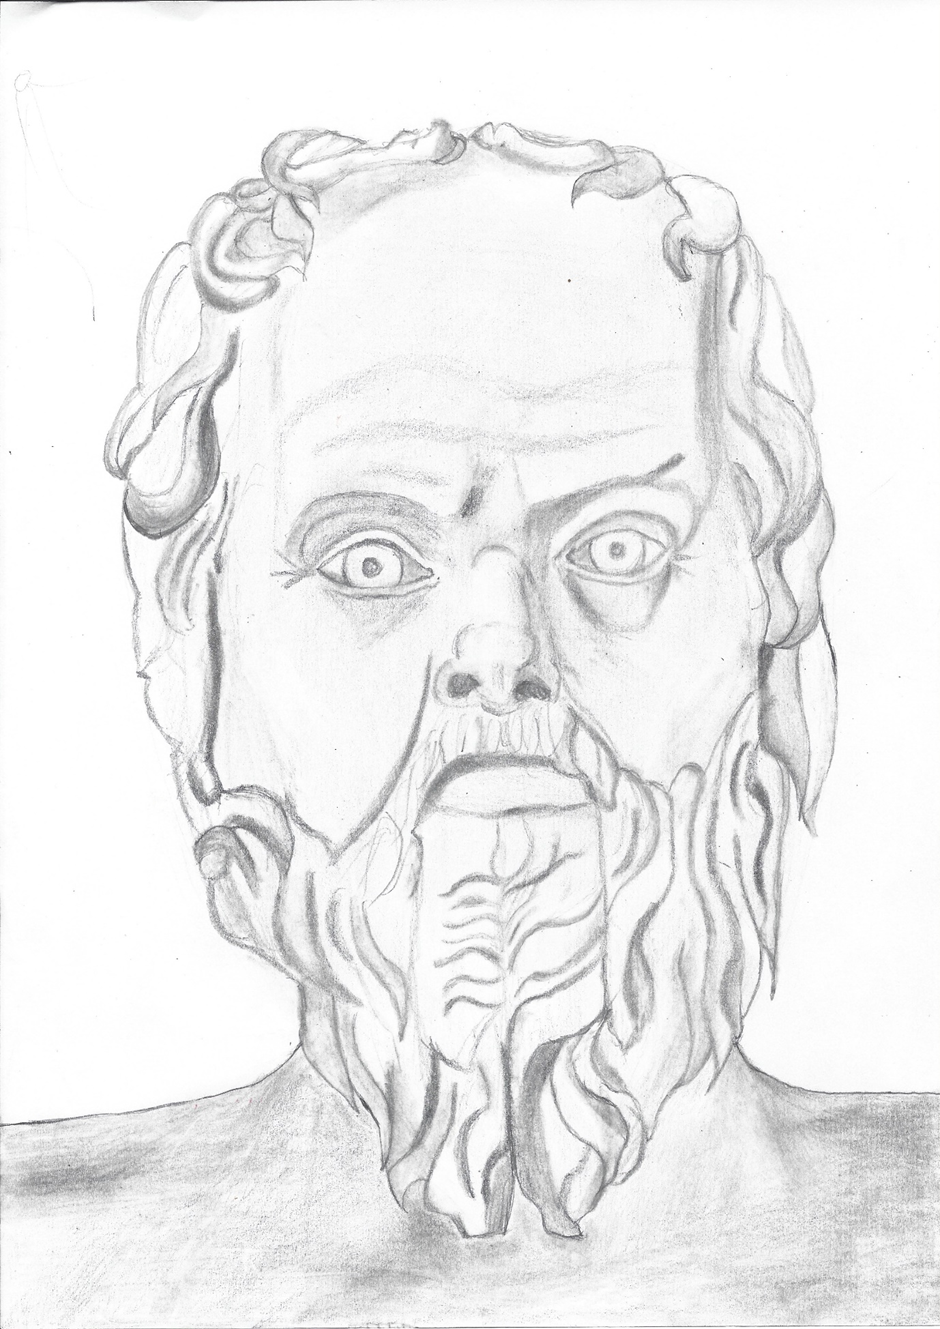 A Pencil Portrait of Socrates.